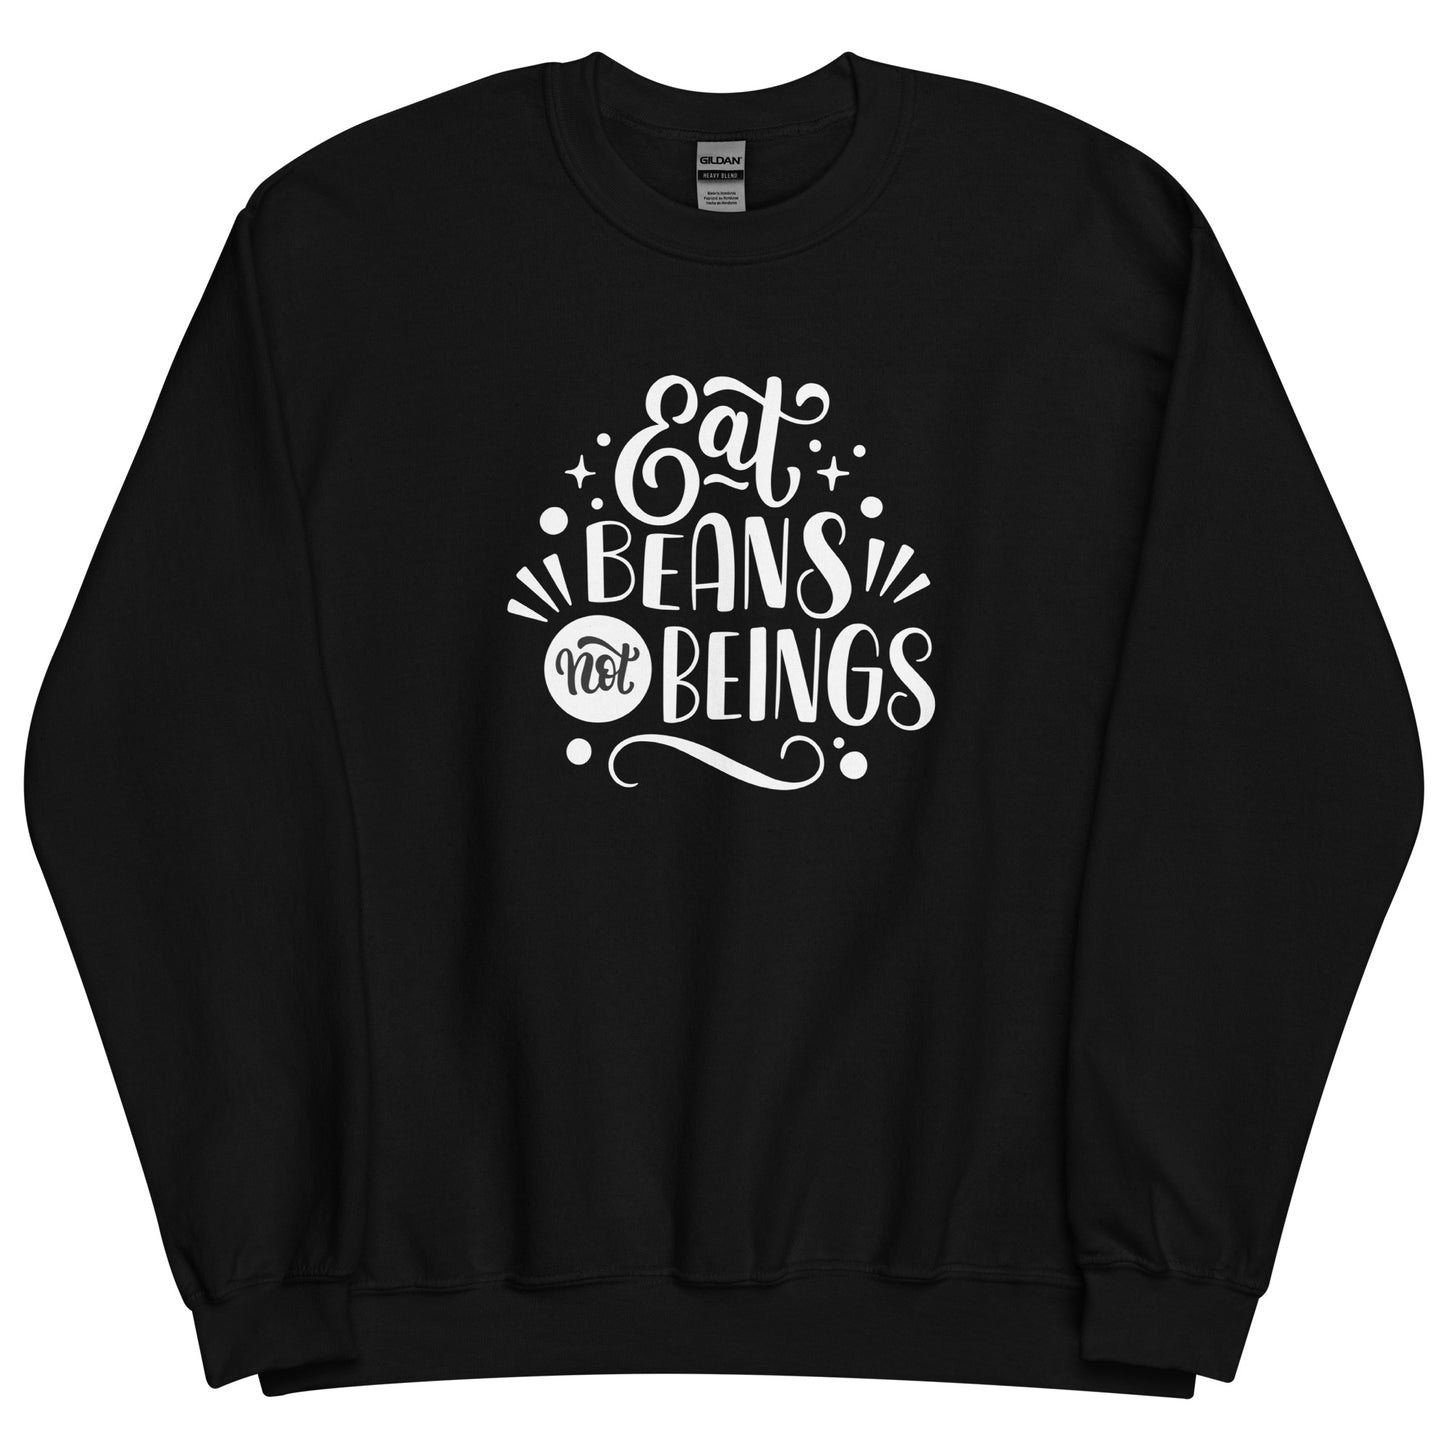 Eat Beans Not Beings - Sweatshirt